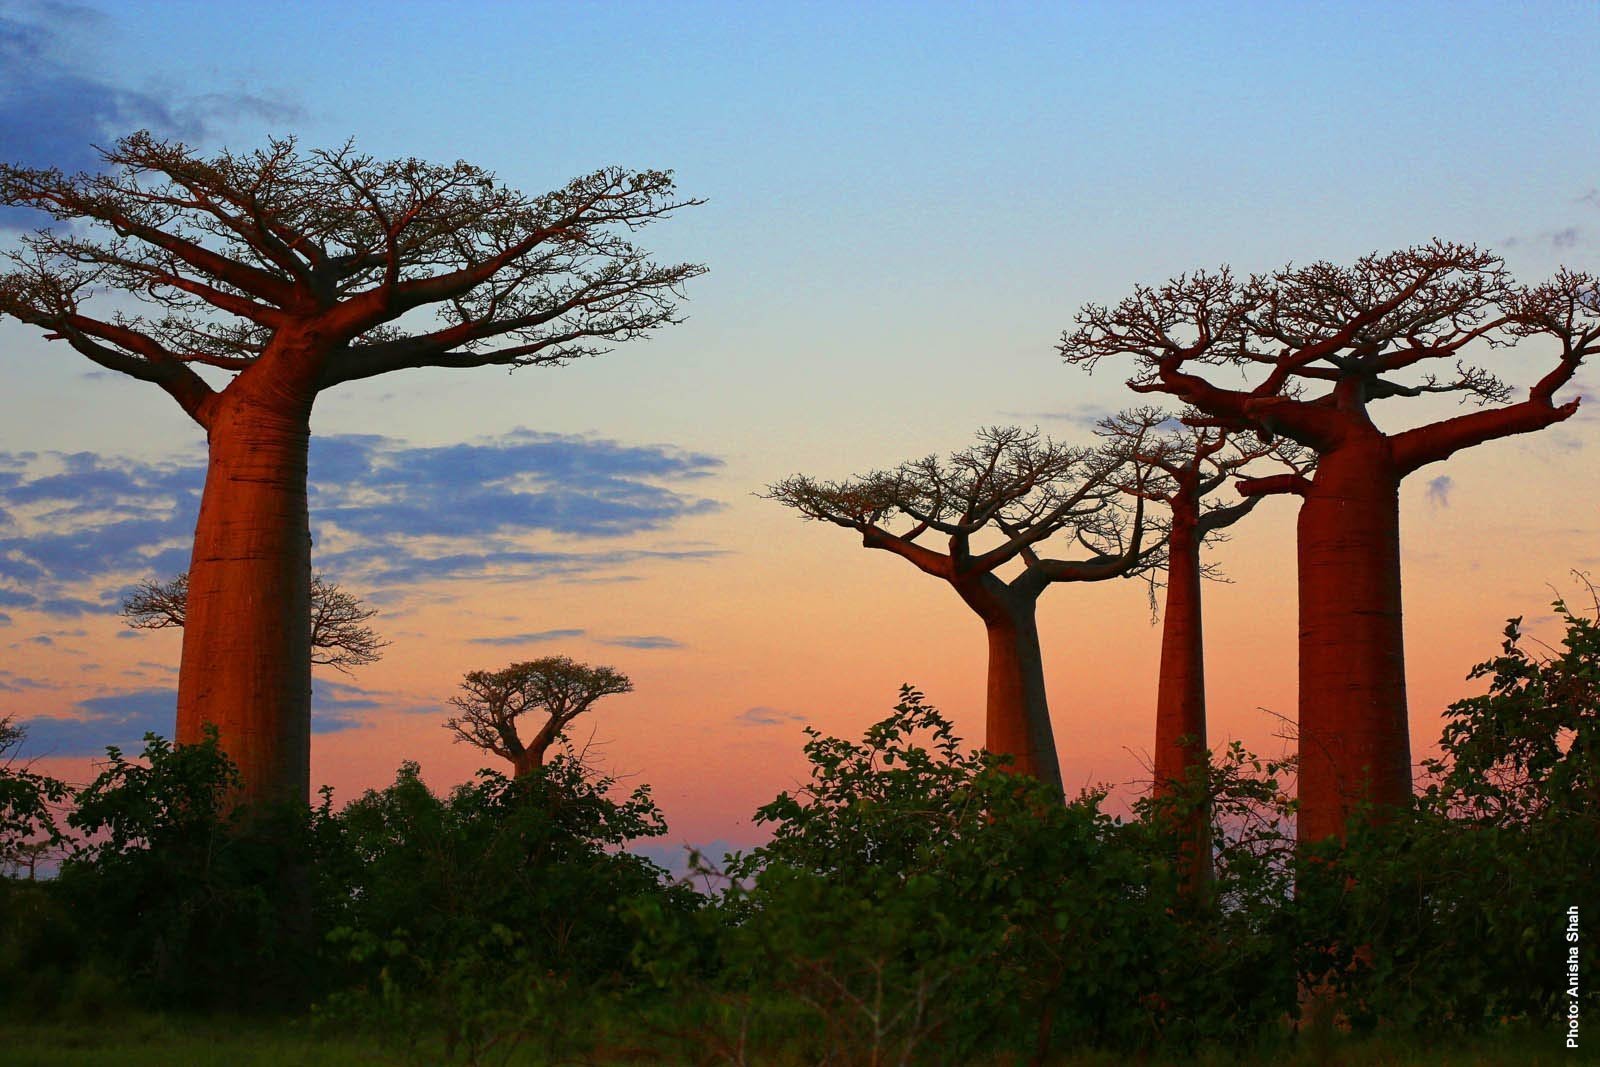 Ба баб. Баобаб в саванне Африки. Баобаб дерево. Баобаб (Adansonia digitata). Растения Танзании баобаб.